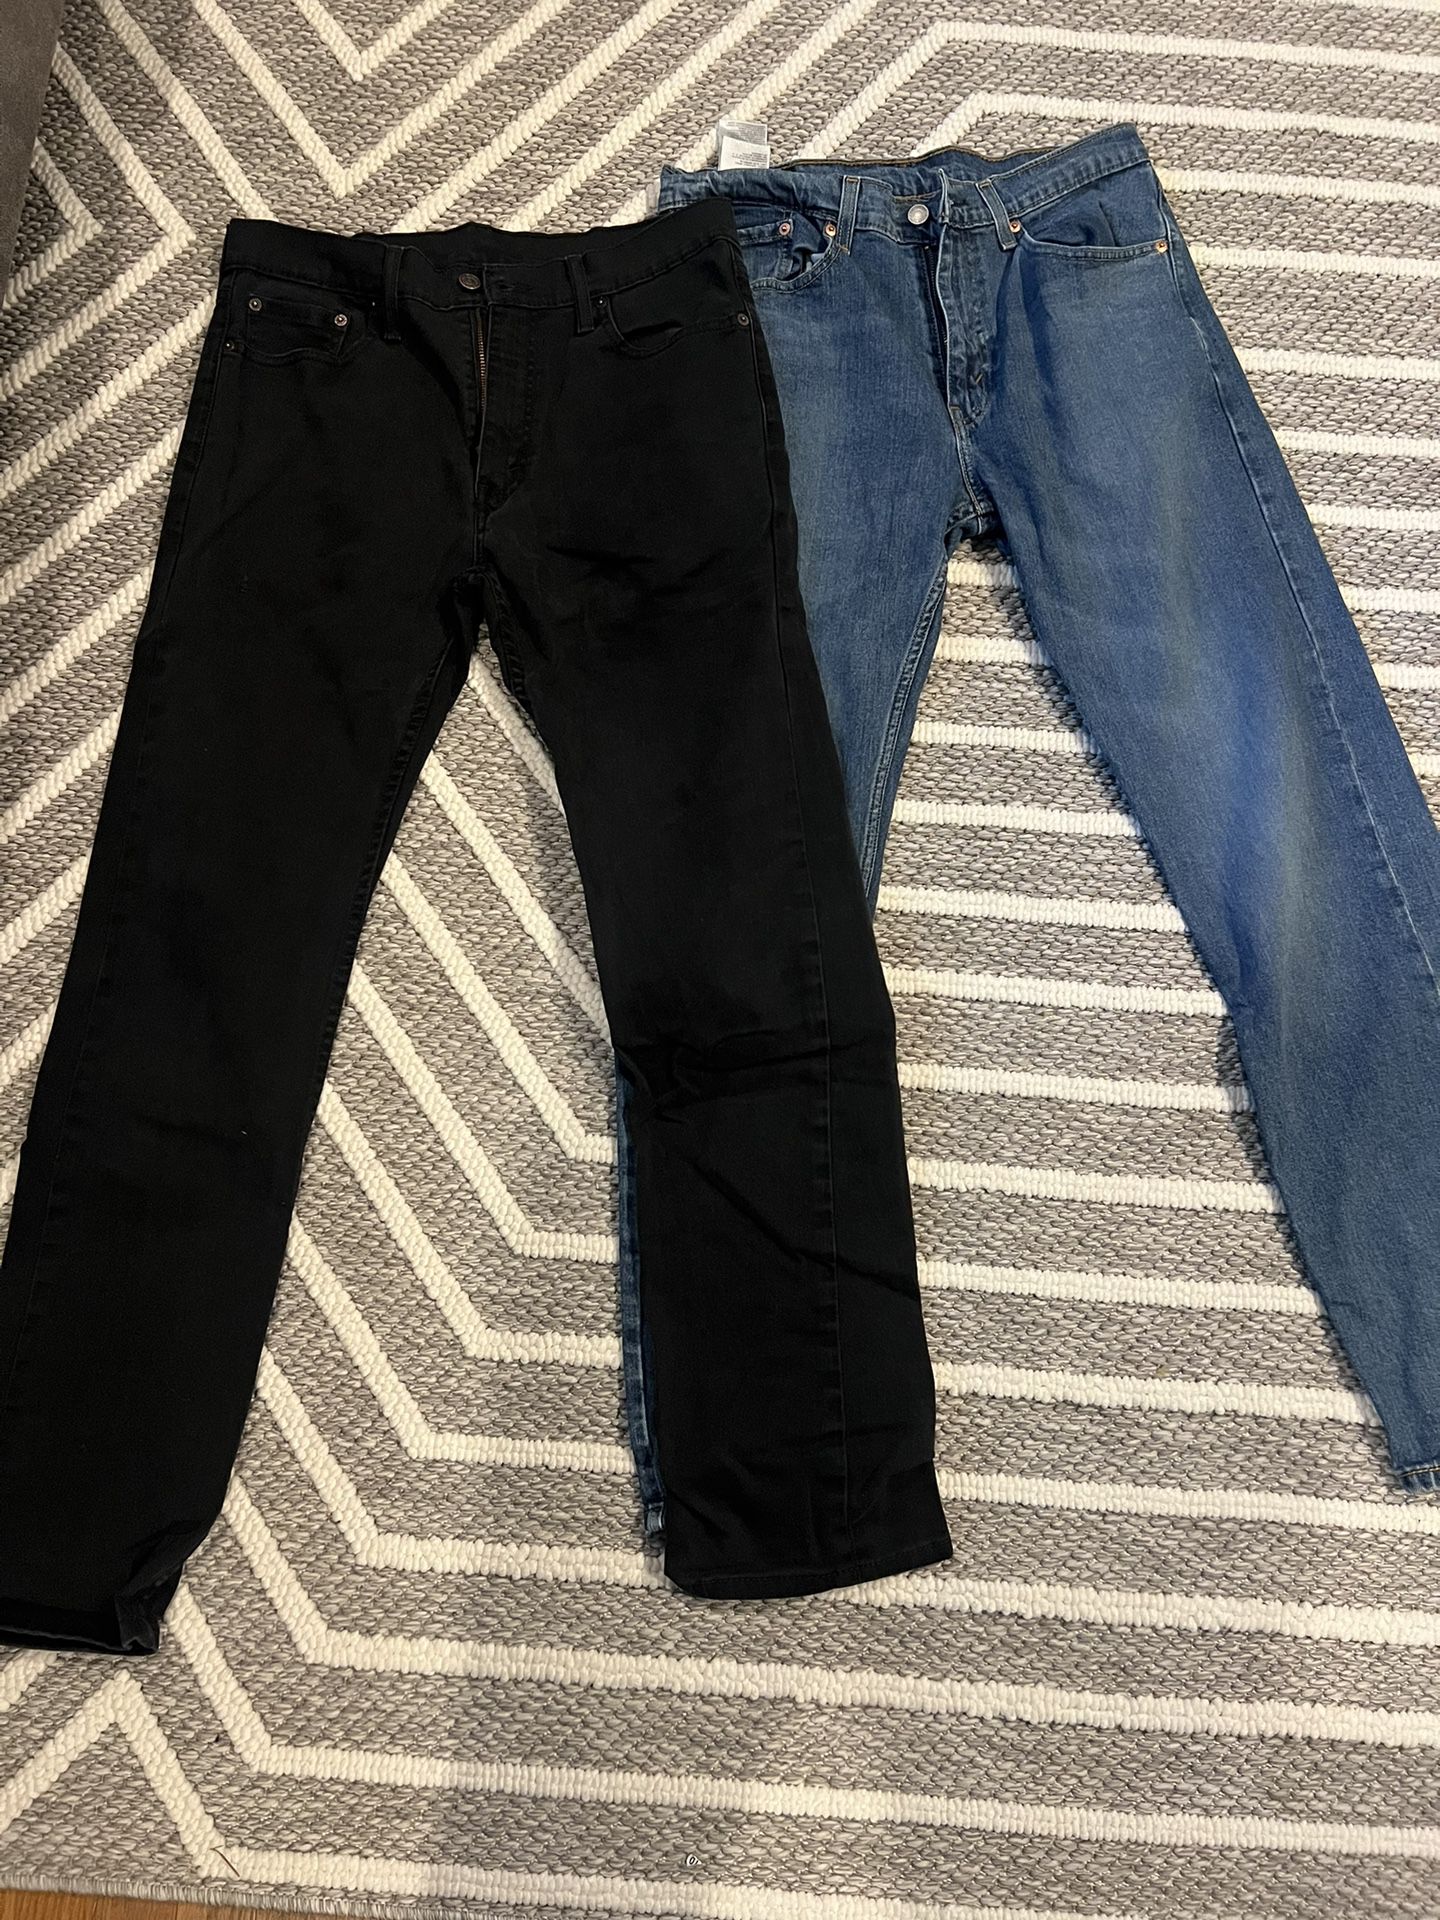 Levi Strauss 32 X 32 Jeans